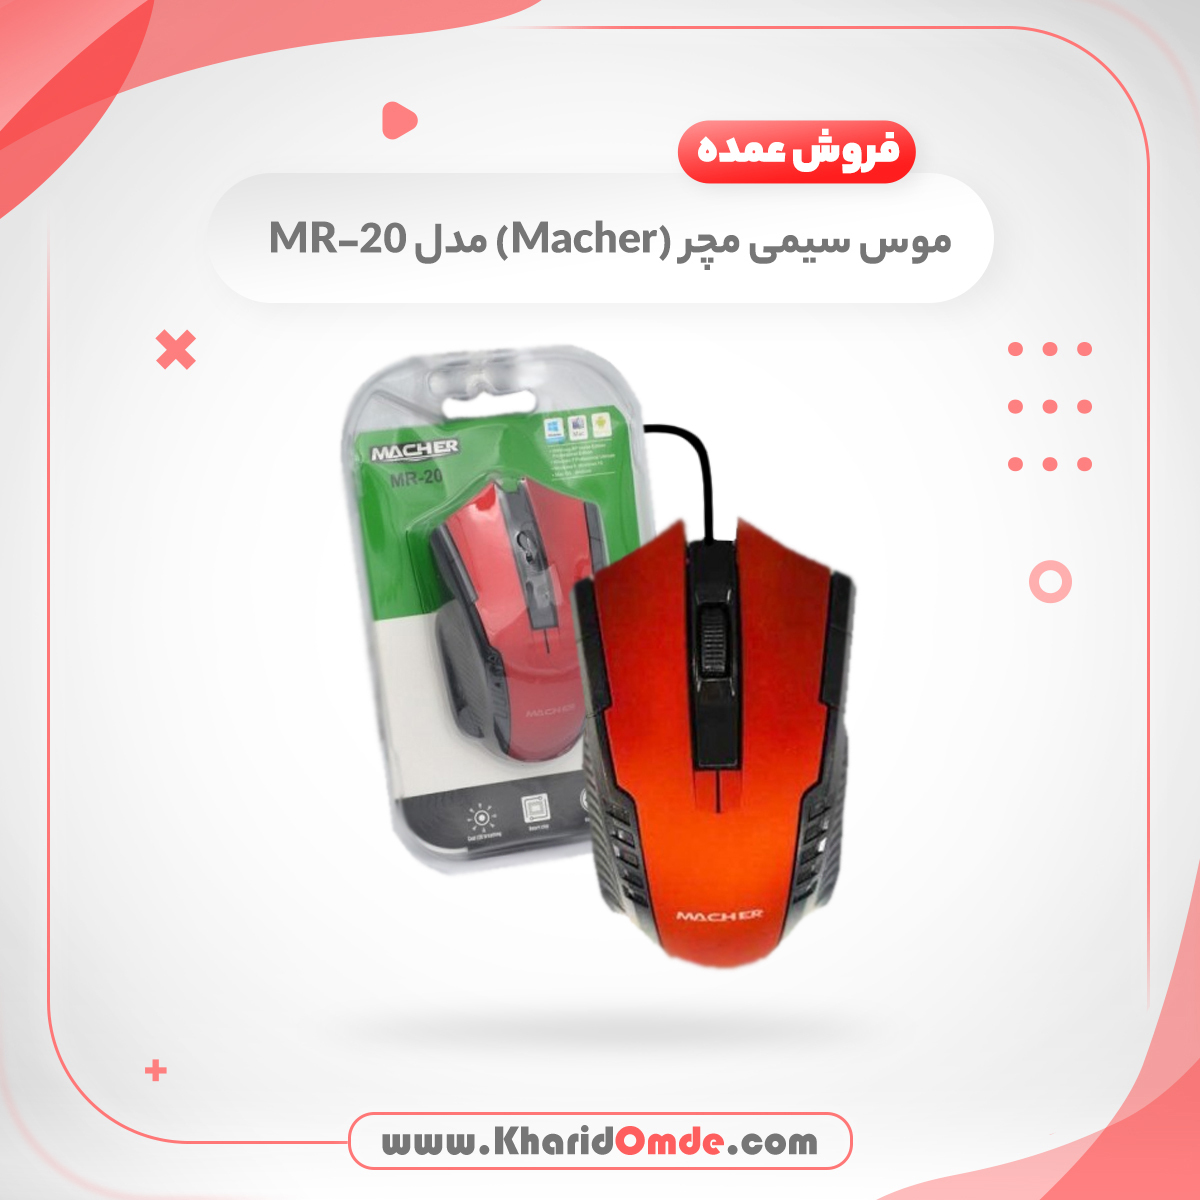 مشخصات و قیمت خرید عمده موس سیمی مچر (Macher) مدل MR-20